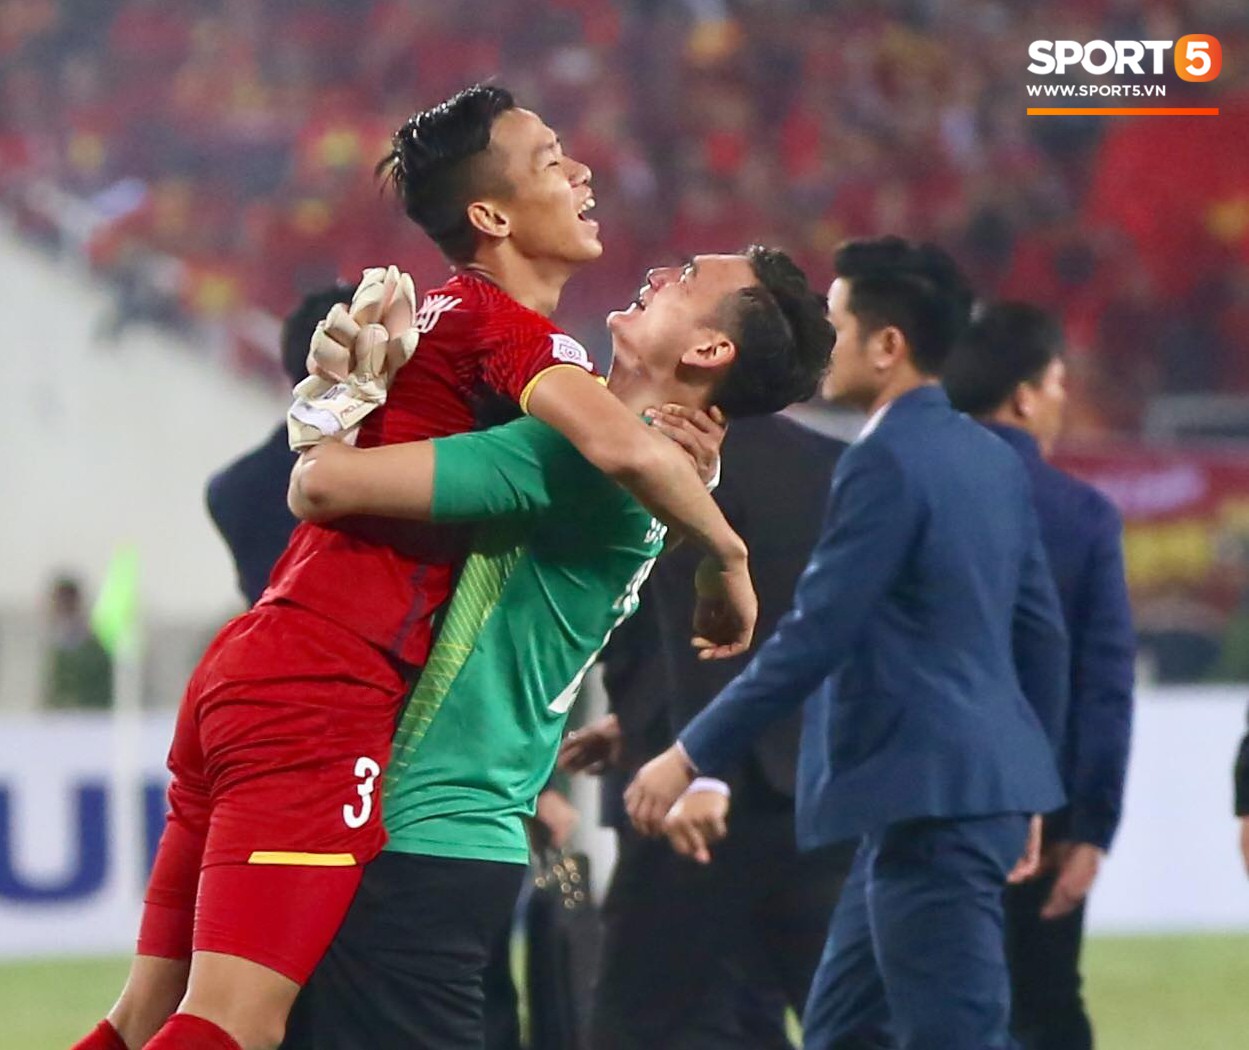 CHÍNH THỨC: Vô địch AFF Cup 2018, Việt Nam sẽ tranh Siêu Cúp châu Á với Hàn Quốc tại Mỹ Đình - Ảnh 1.